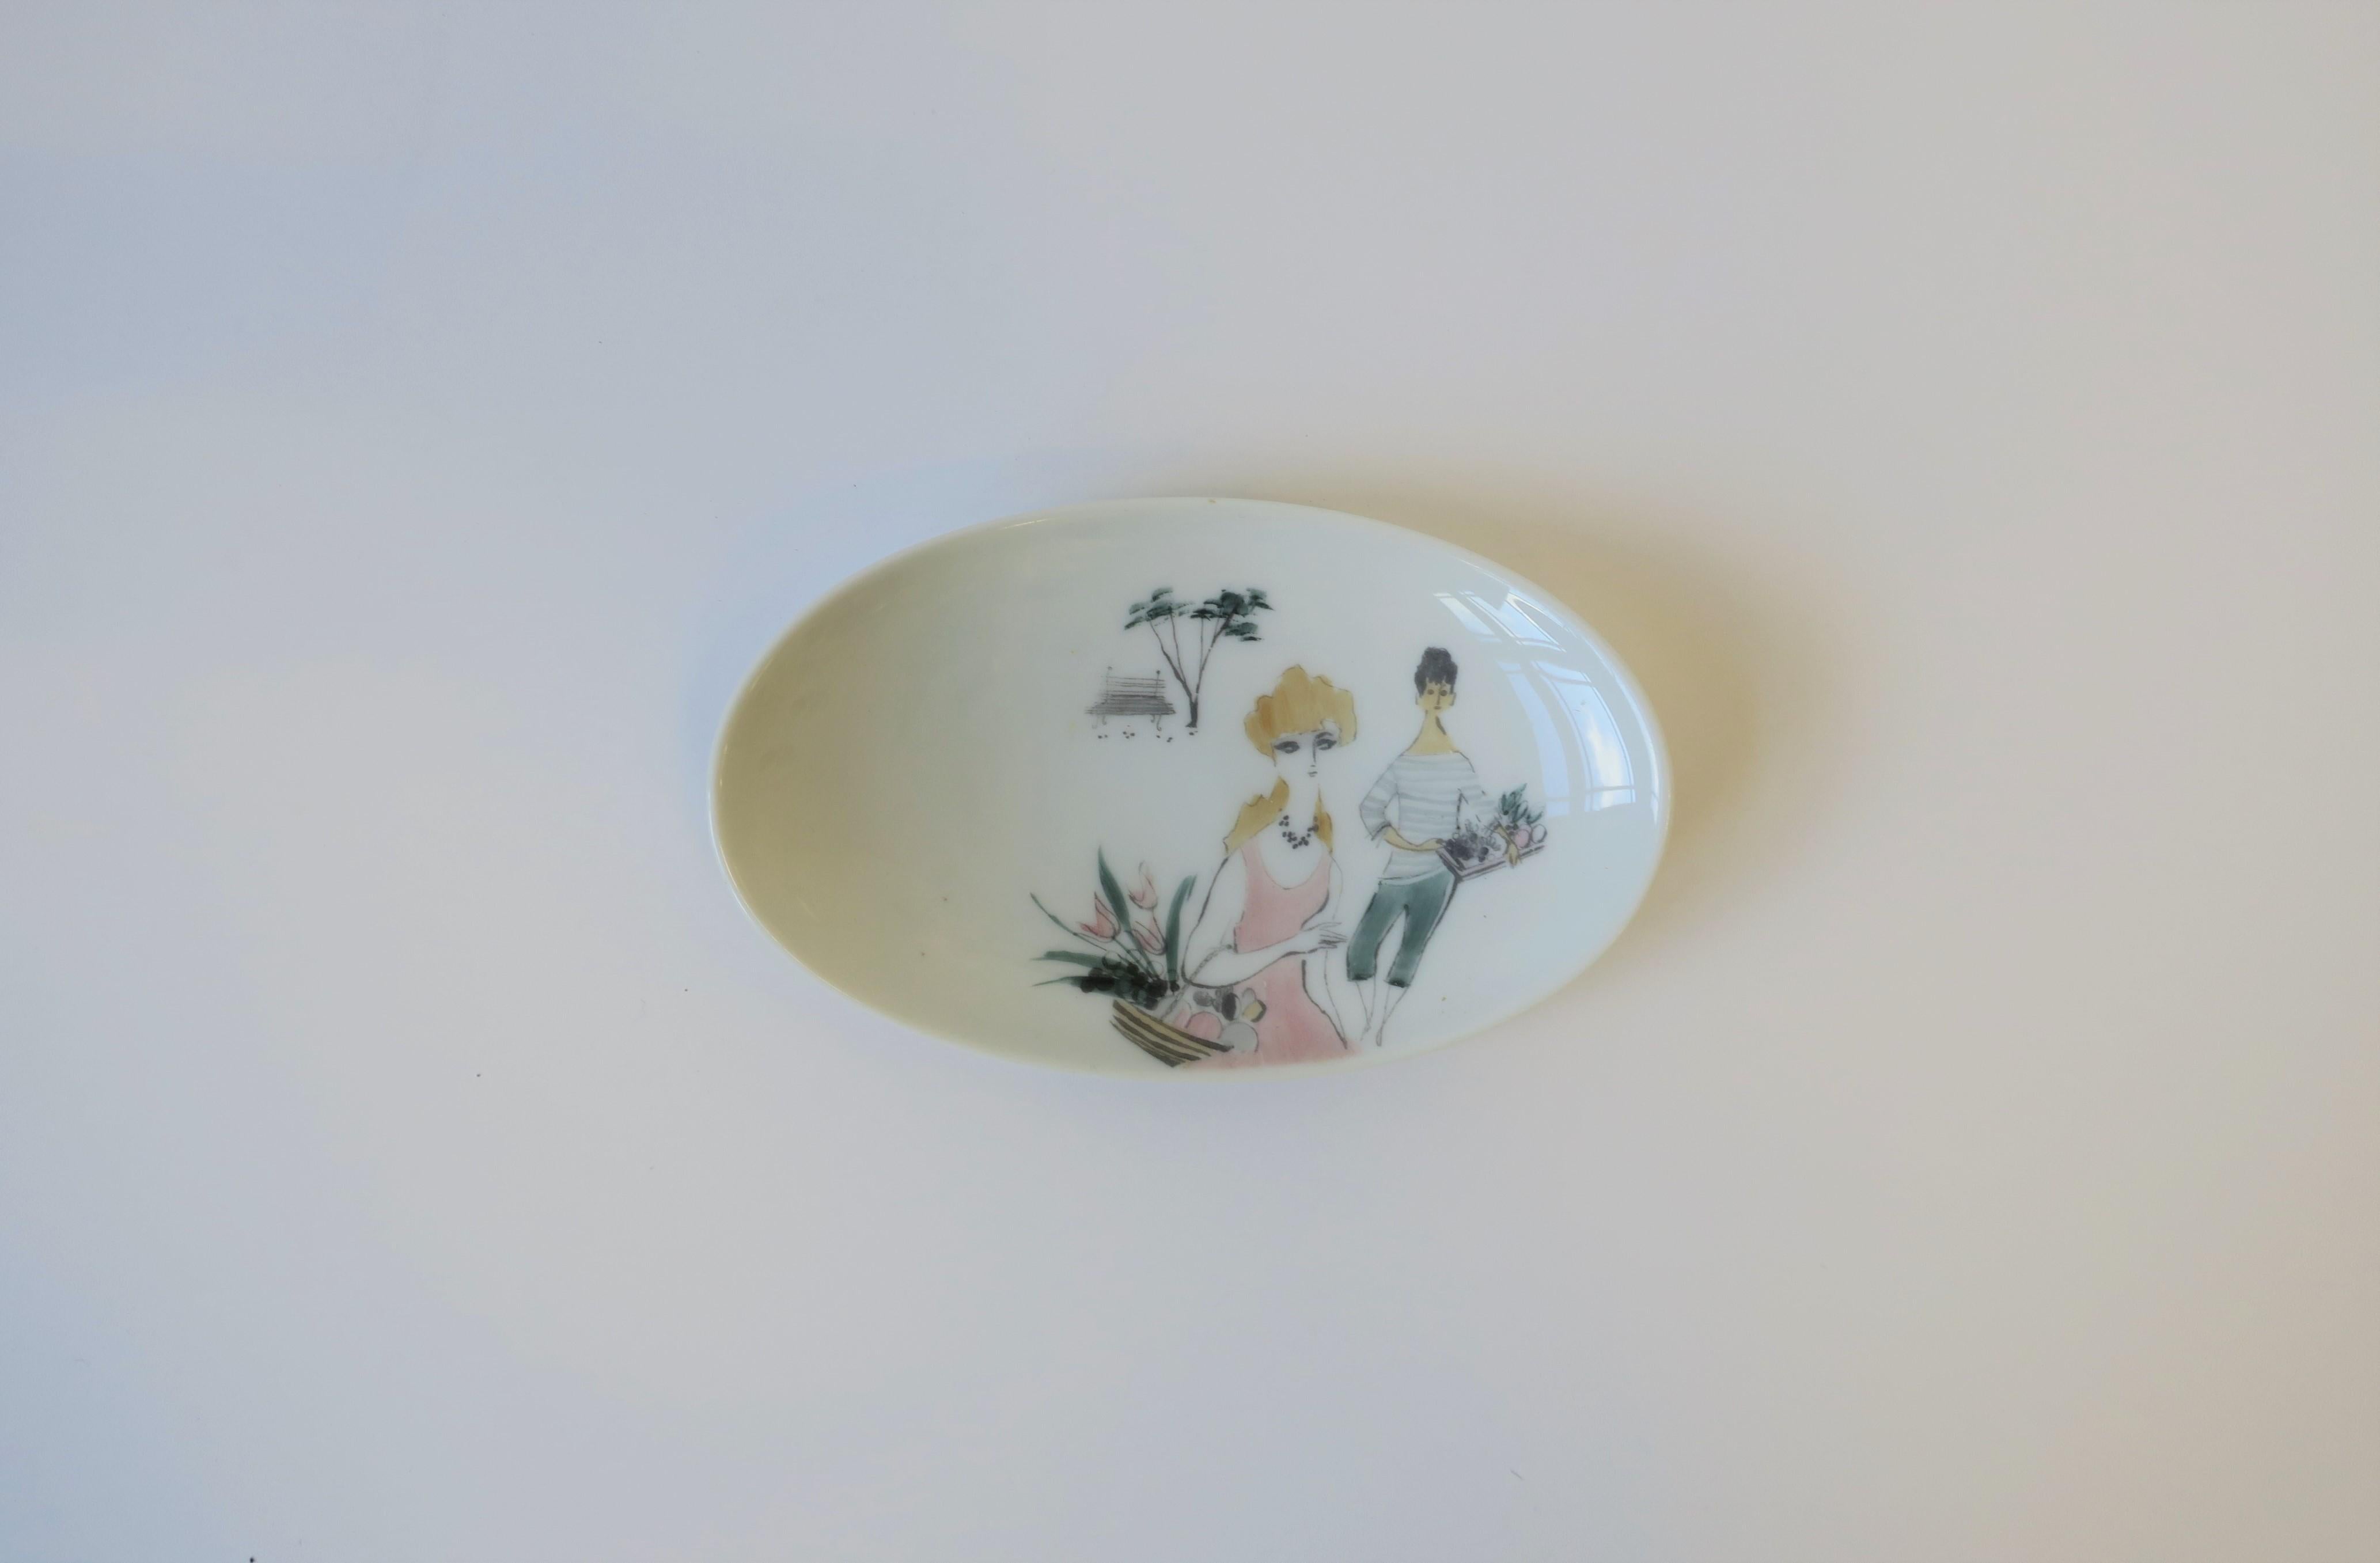 Schöne ovale Schmuckschale aus weißem Porzellan mit weiblichen Figuren, 'Rendezvous', von Rosenthal, um das 20. Jahrhundert, Deutschland. Die Schale zeigt handgemalte weibliche Figuren, die mit Blumen und Früchten gefüllte Körbe in sanften